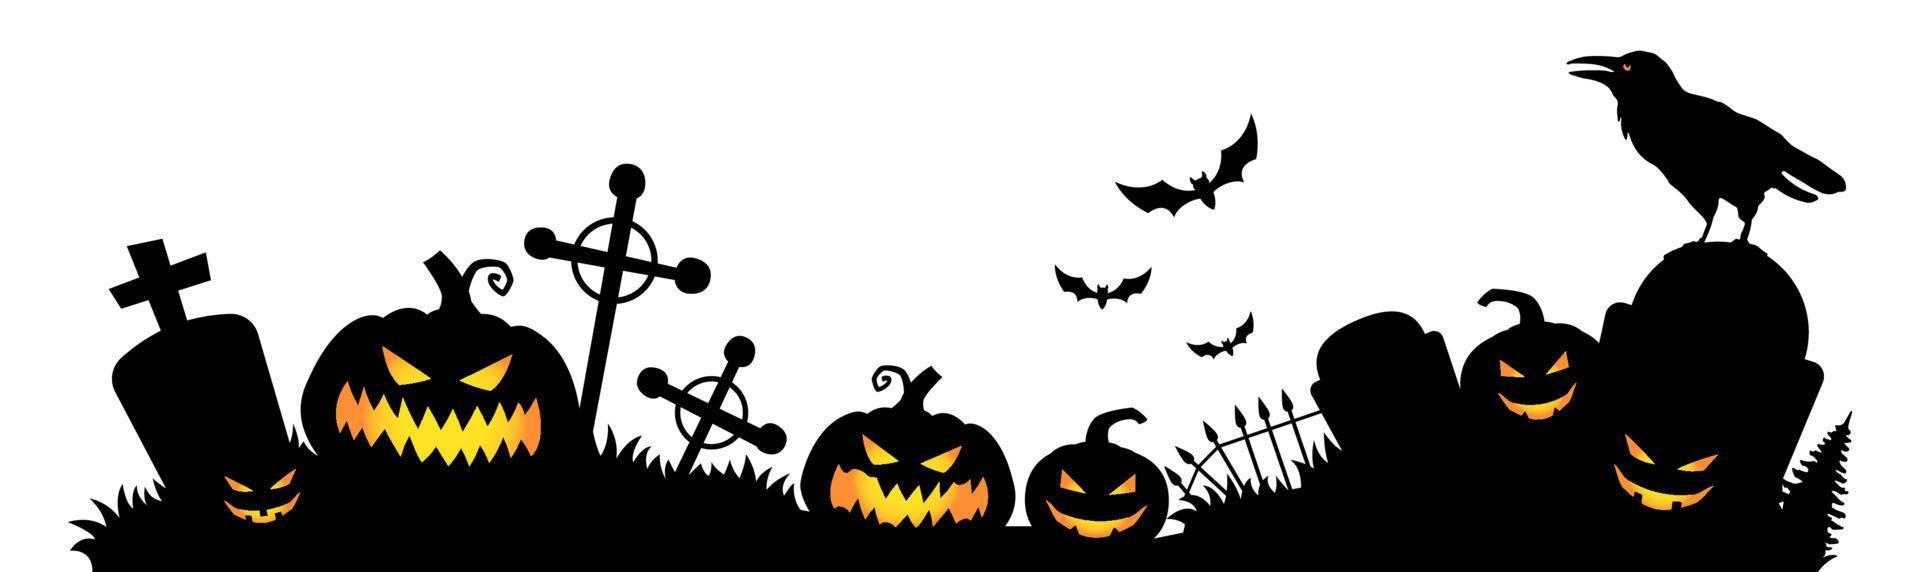 assustador cemitério da meia-noite. banner vetorial horizontal para o feriado de halloween. silhueta de morcegos, abóboras, corvo etc. vetor